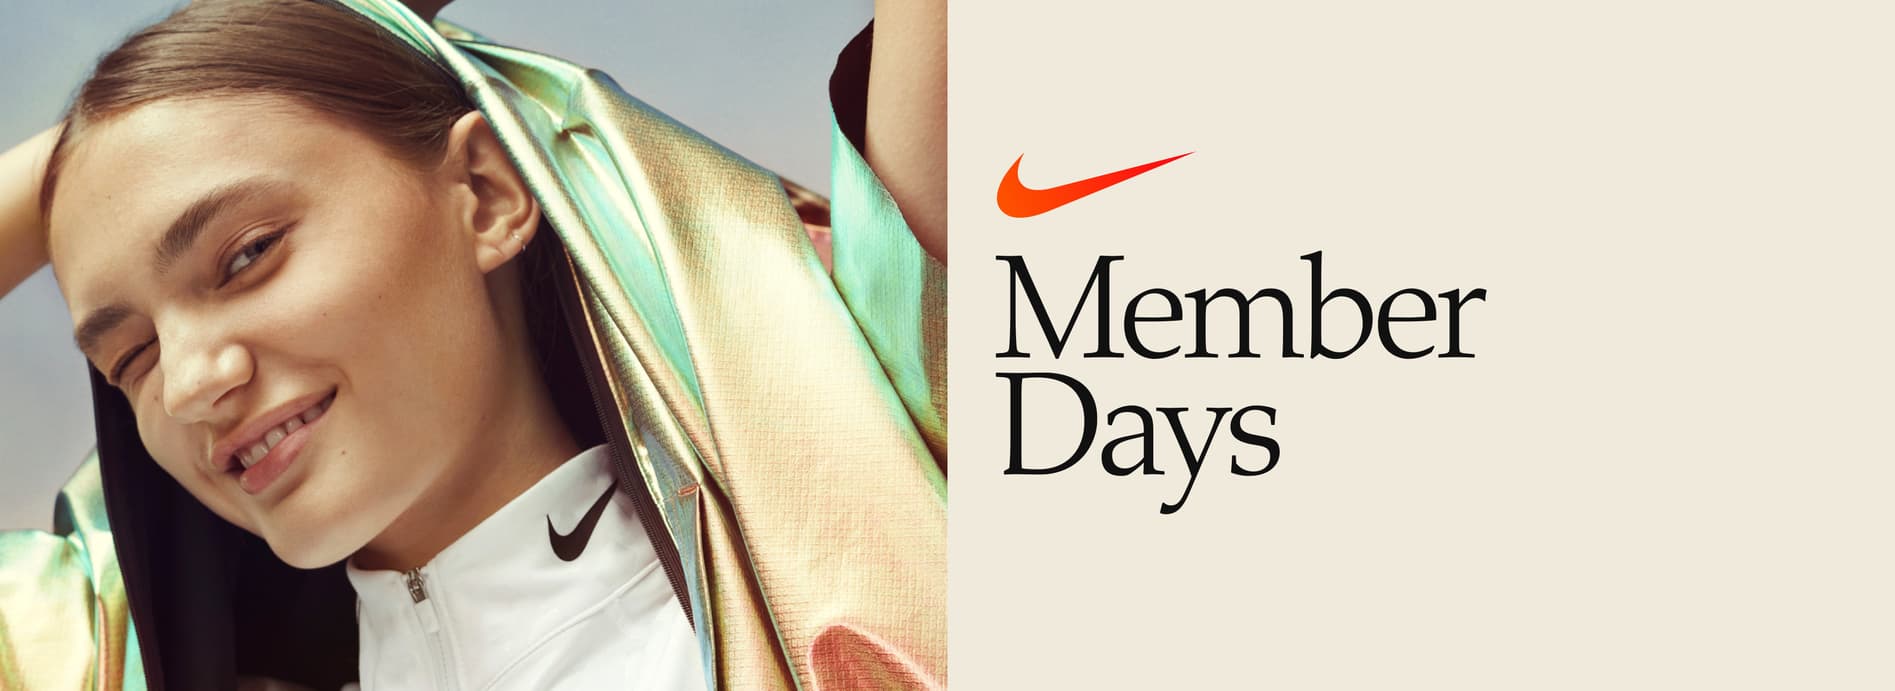 Nike Member Days